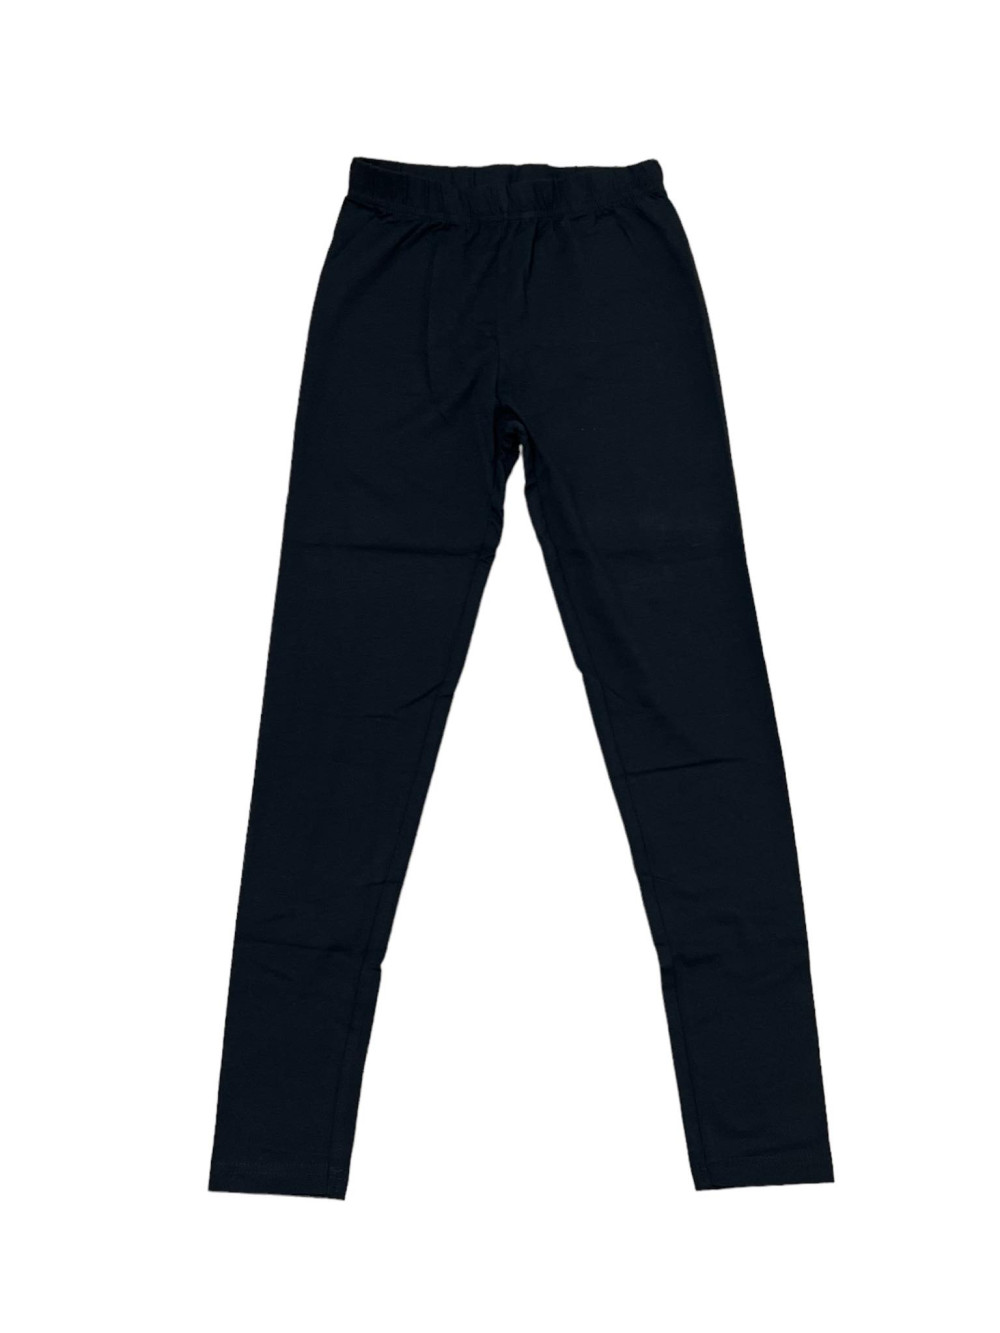 Lányka leggings 134-164 (vékony) /fekete/